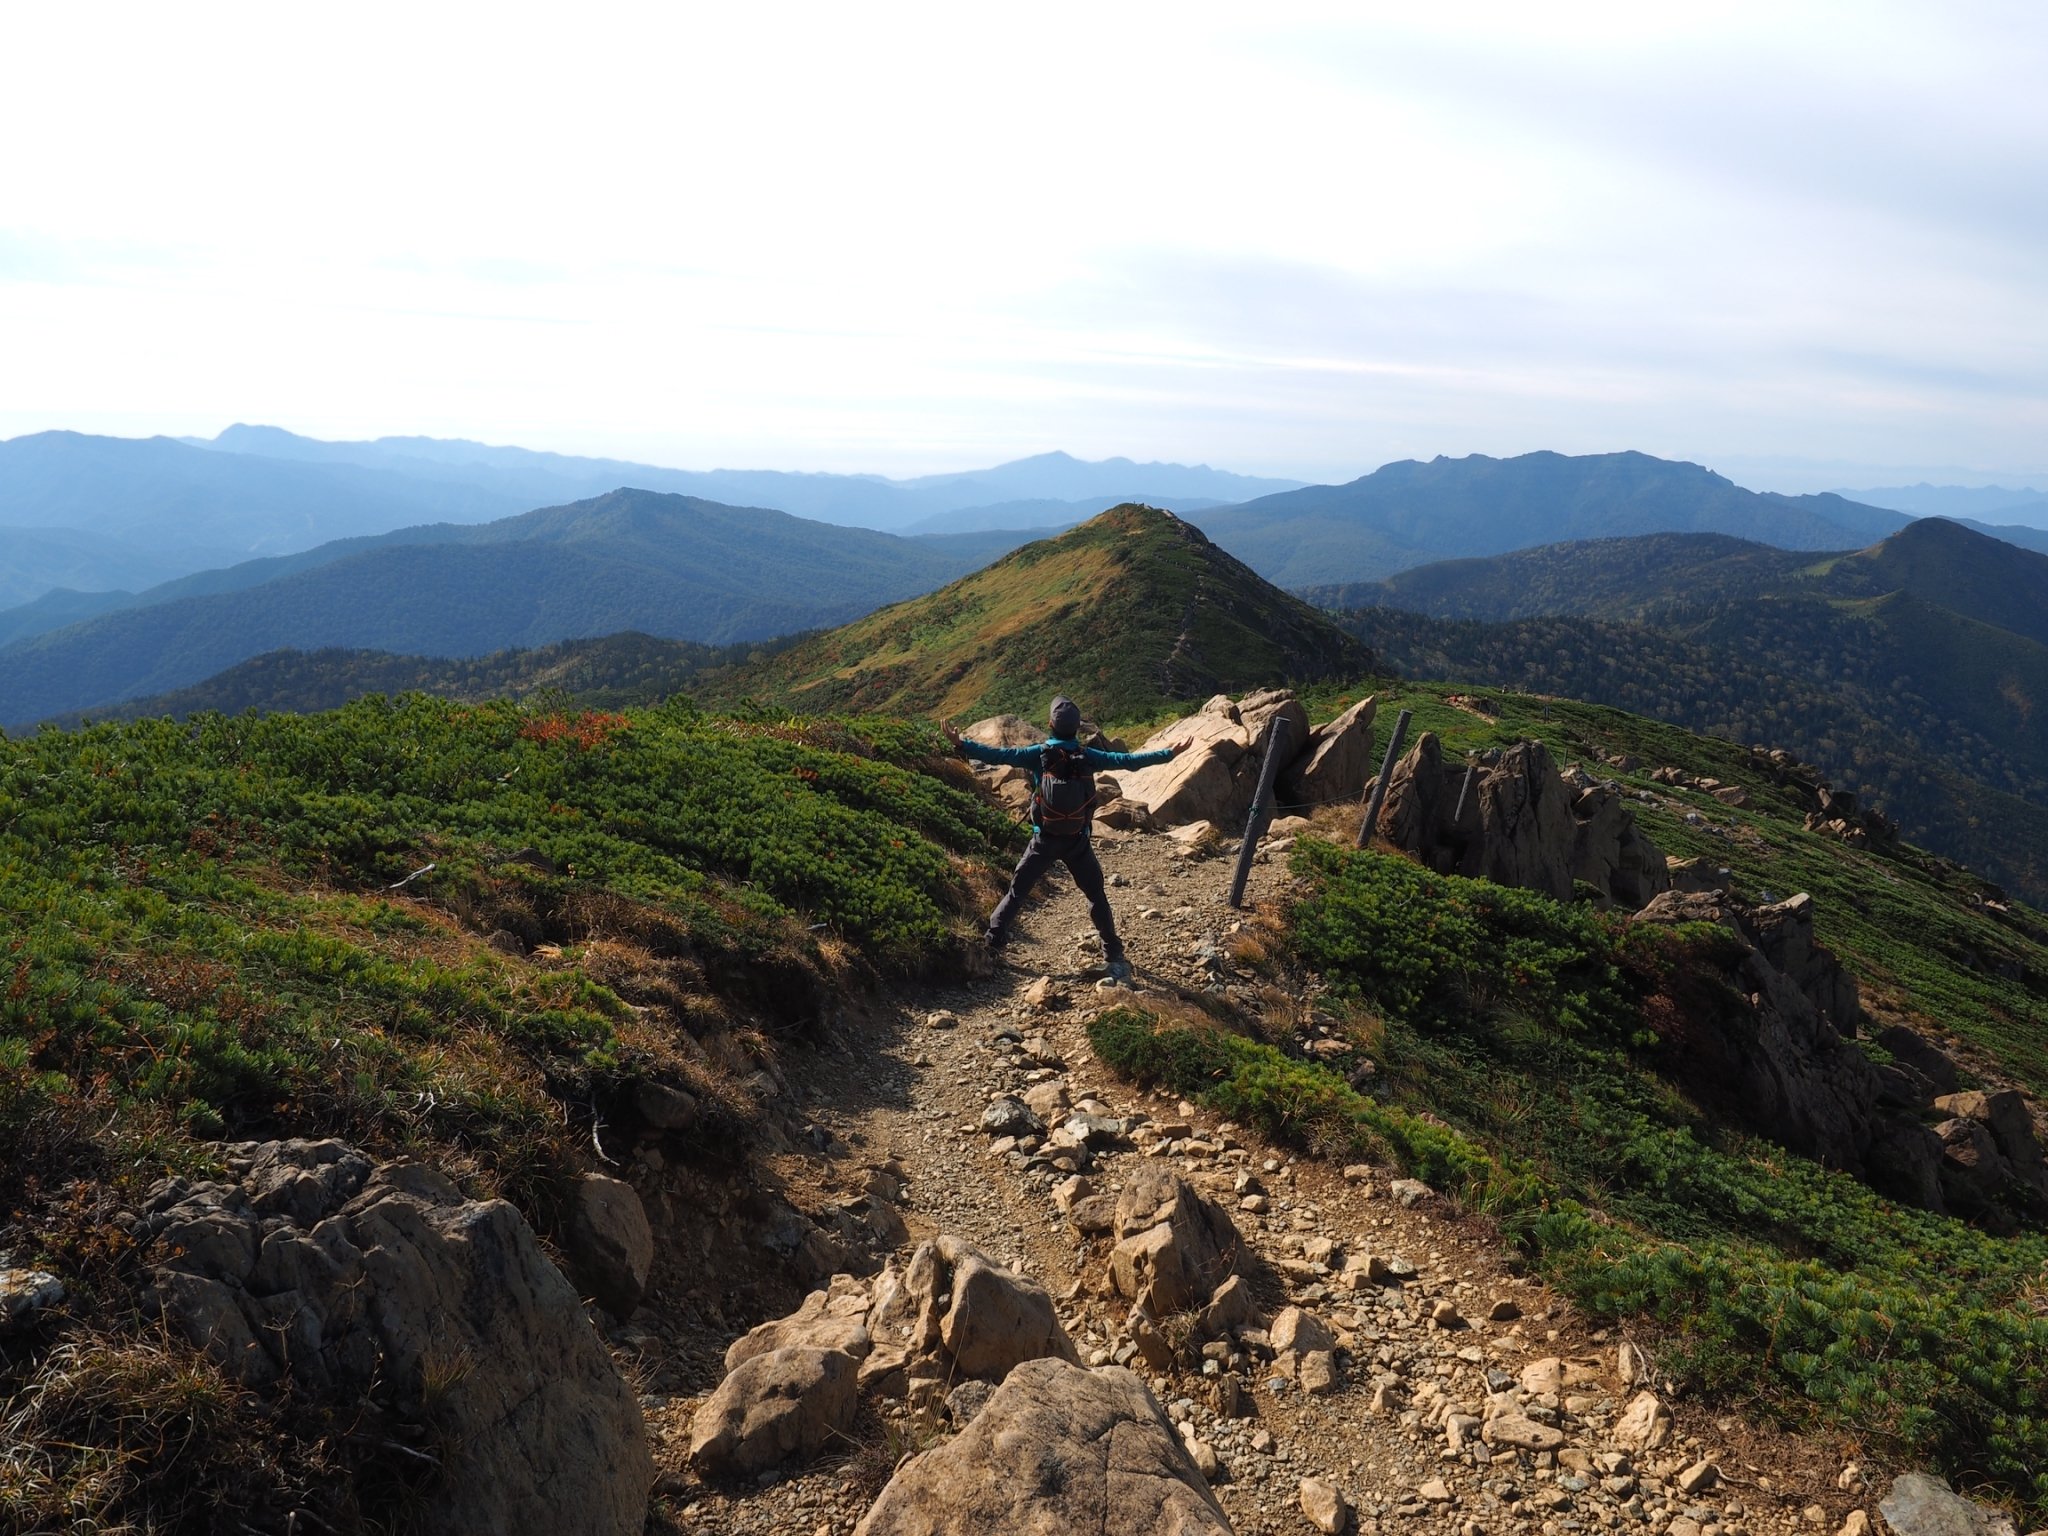 登山にハマり、その過程で温泉、カメラが大好きに。
2012年から登山開始。
年間20〜30座、
2023年は念願の裏銀座縦走路へ。
登山ブログ『山は気分屋』で、登山の魅力についての記事を書いております！
pv月30000程度
Instagram　https://t.co/5G5X2t5YGi